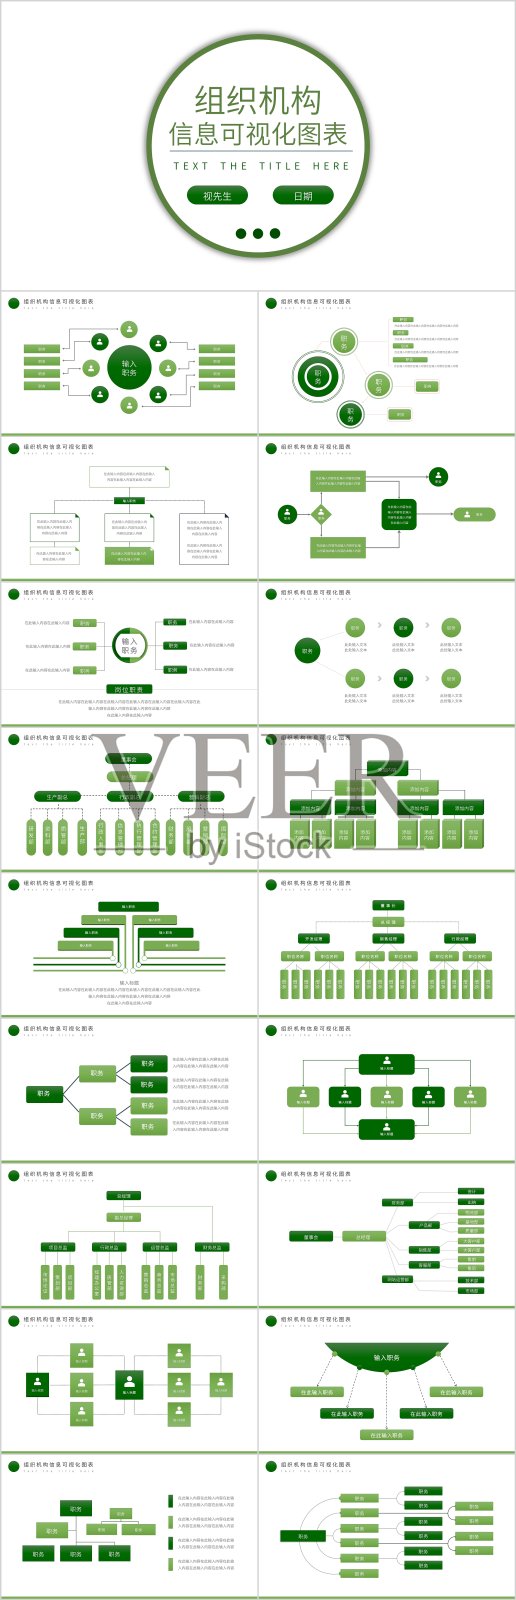 绿色组织机构信息可视化图表PPT模板设计模板素材